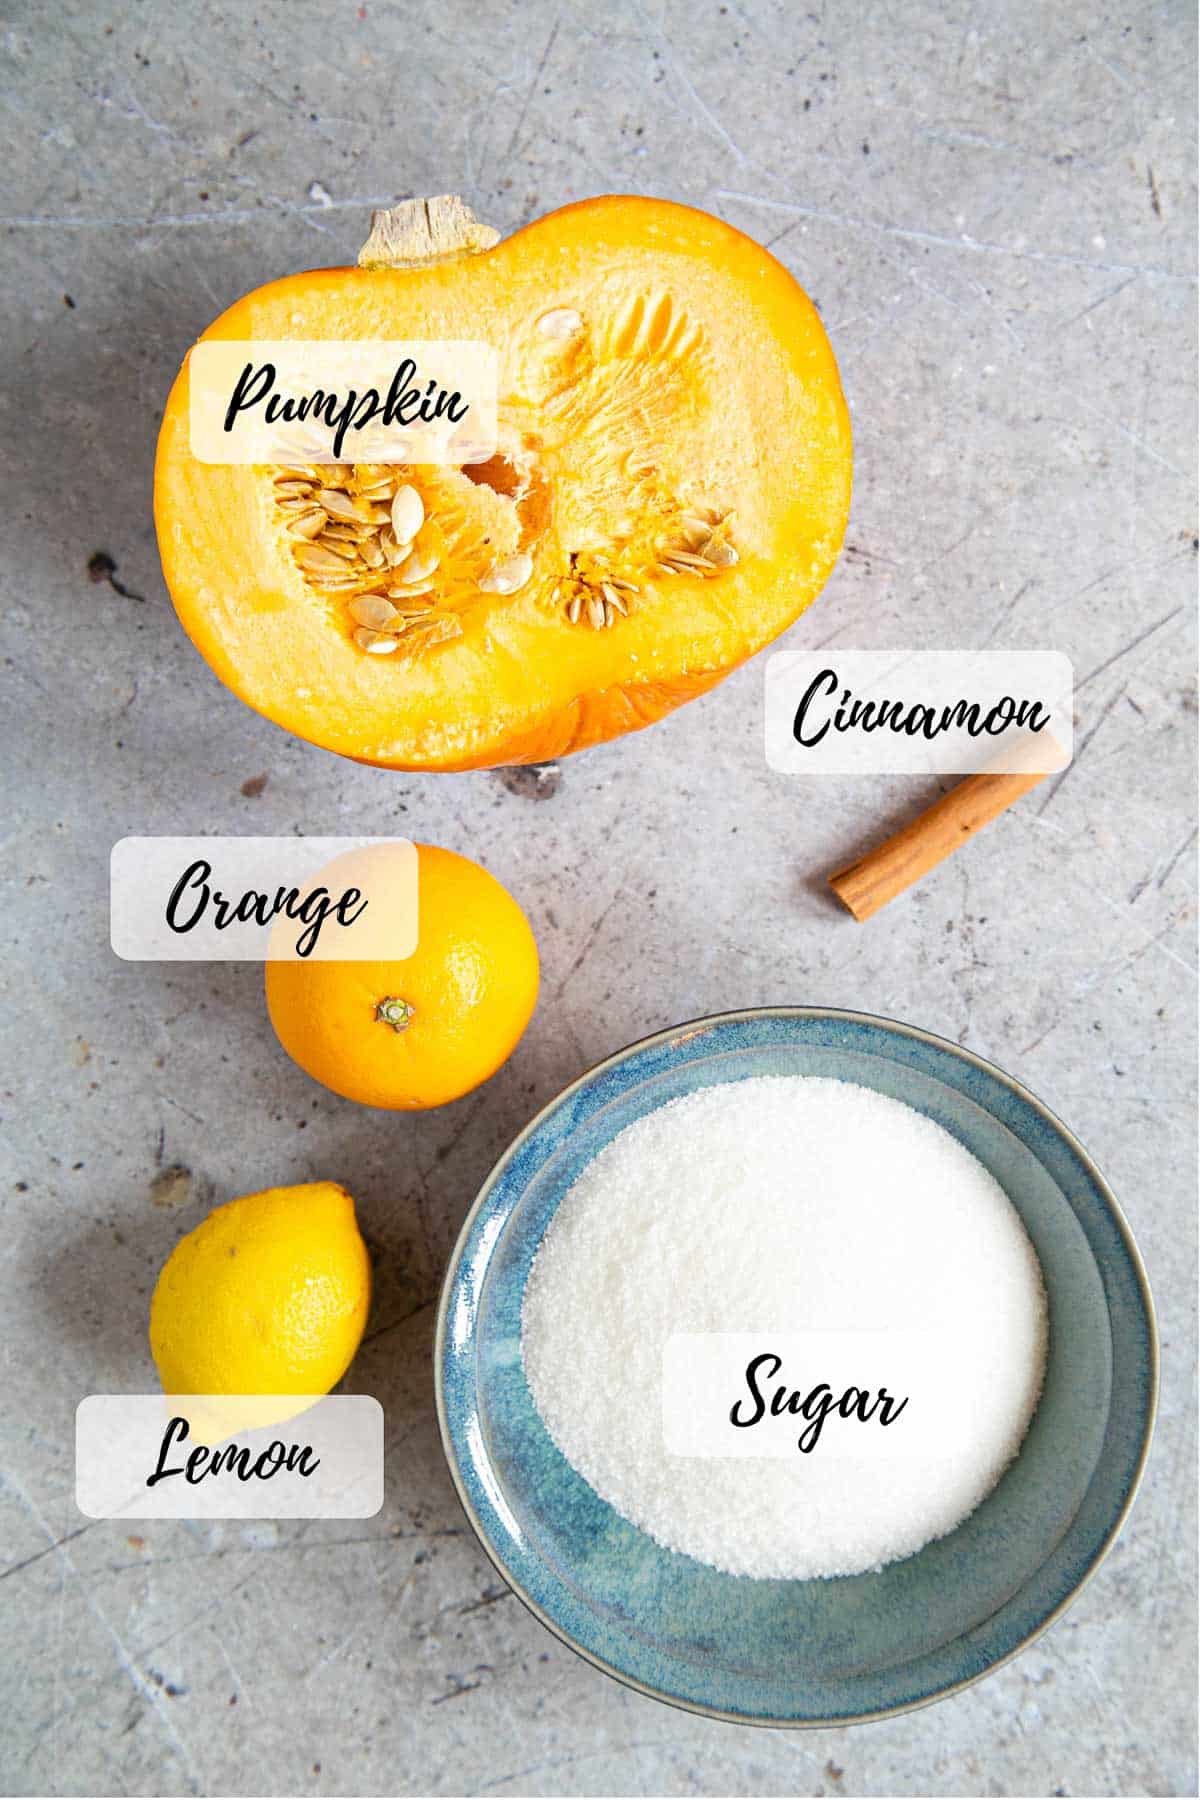 Pumpkin jam ingredients: cinnamon, sugar, lemon, orange and pumpkin